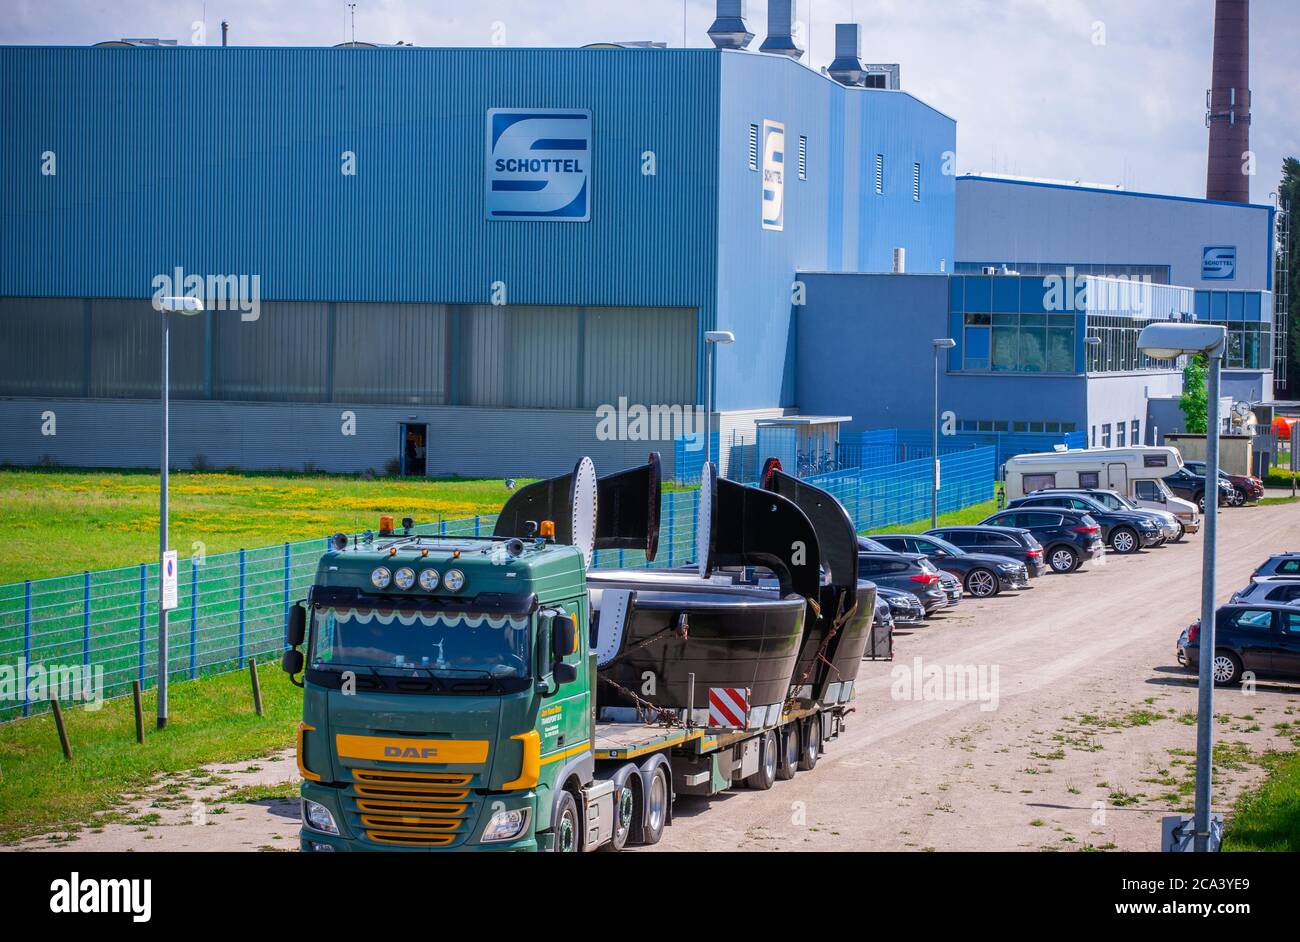 Wismar, Deutschland. Juli 2020. Das Unternehmen Schottel stellt Schiffsantriebe und Systeme zur Stromerzeugung mit Wasserkraft her. Quelle: Jens Büttner/dpa-Zentralbild/ZB/dpa/Alamy Live News Stockfoto